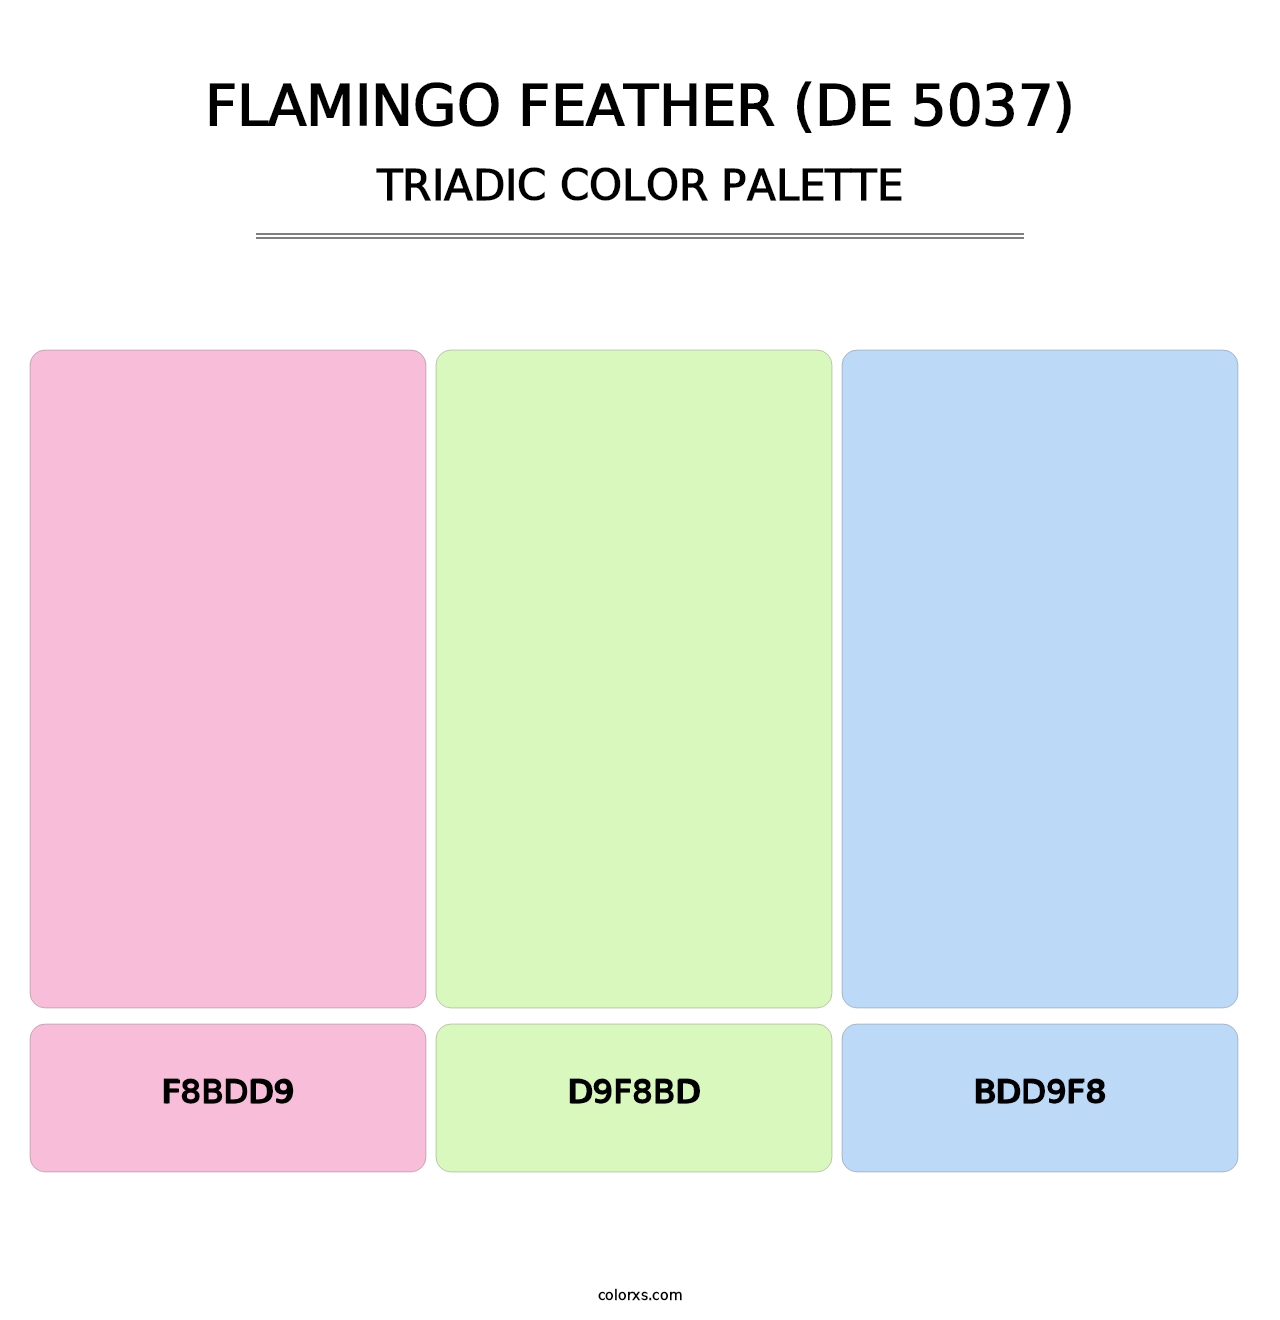 Flamingo Feather (DE 5037) - Triadic Color Palette